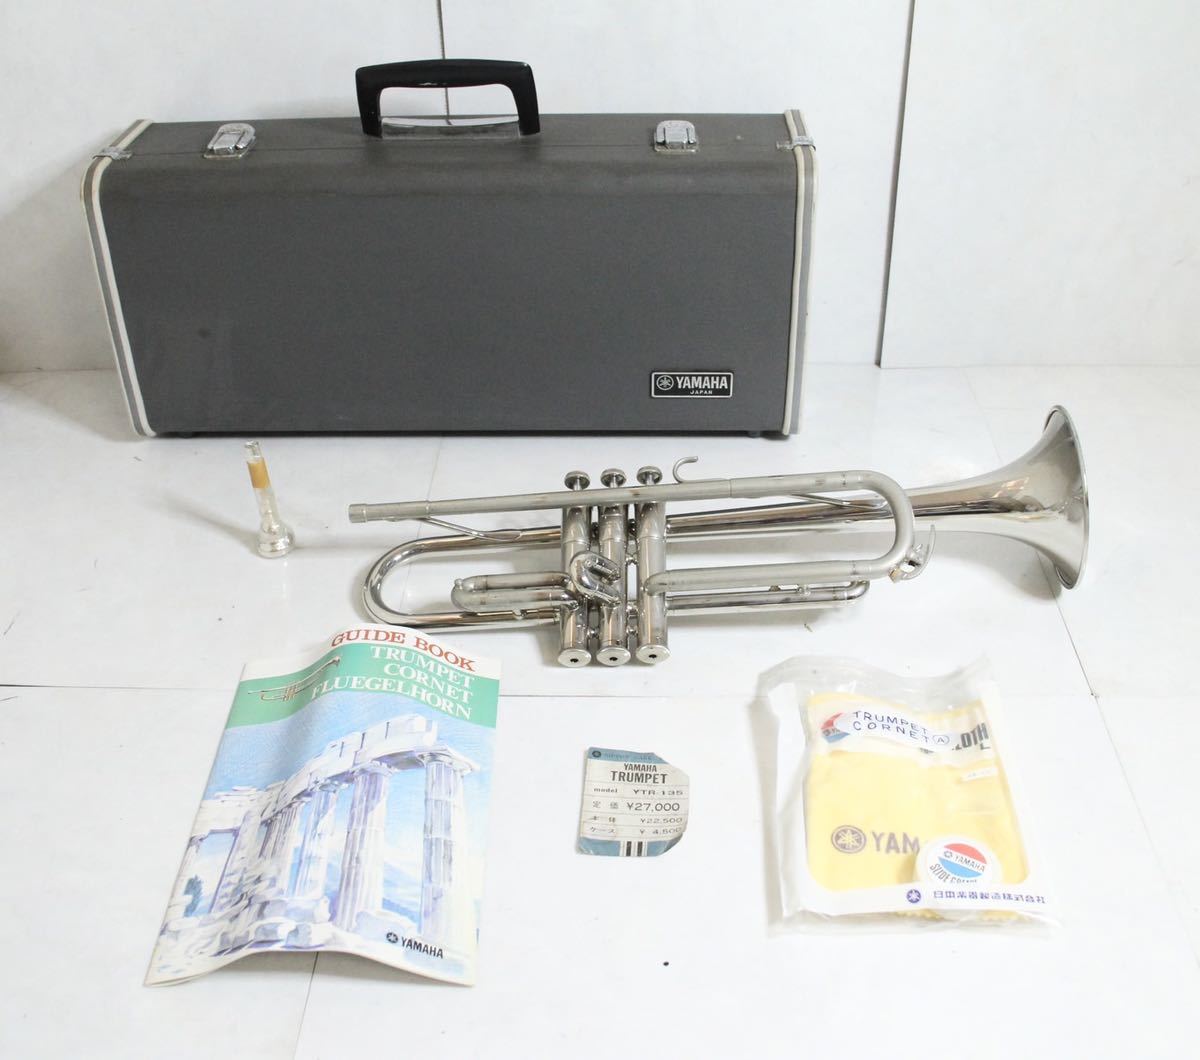 YAMAHA ヤマハトランペットYTR-135 管楽器金管楽器ハードケース付属